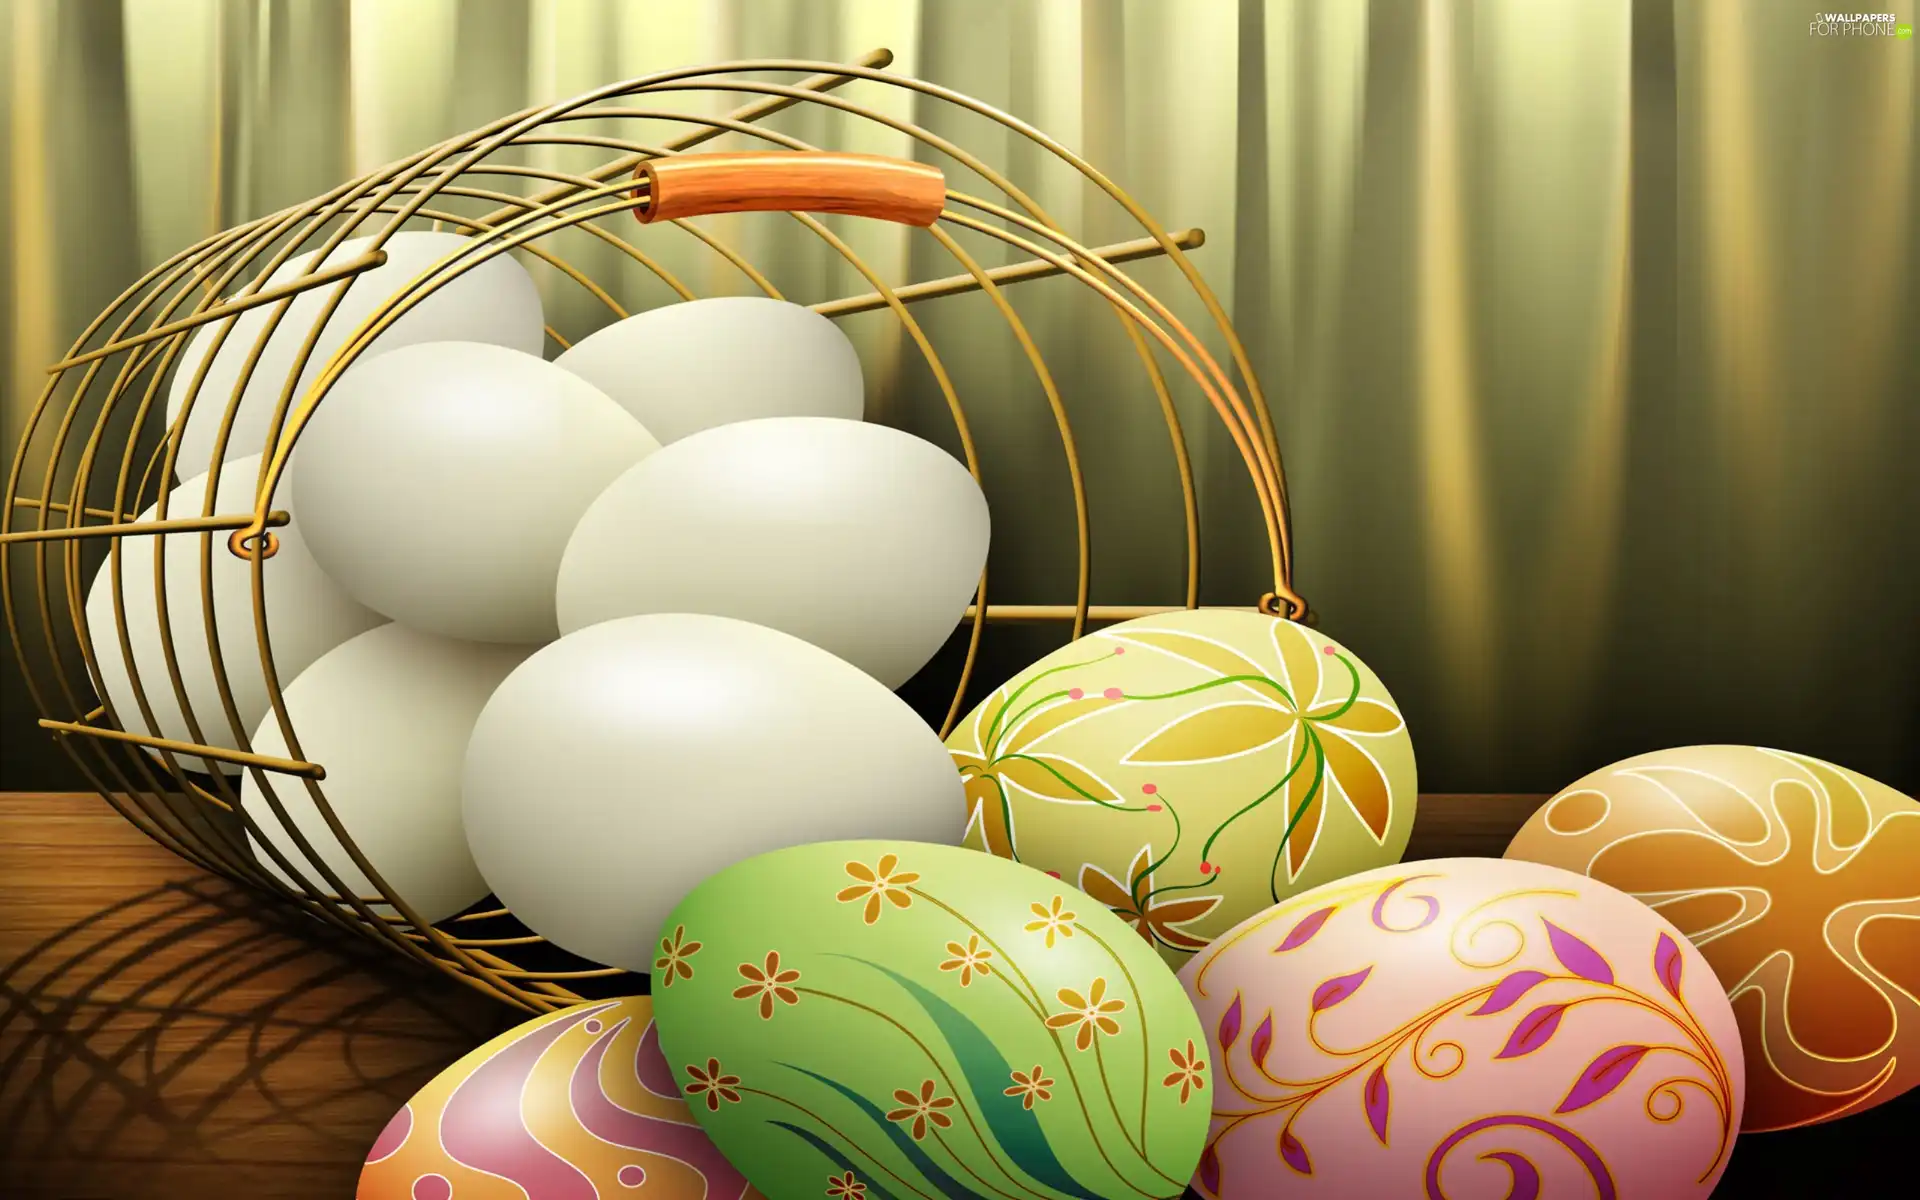 basket, color, eggs, eggs